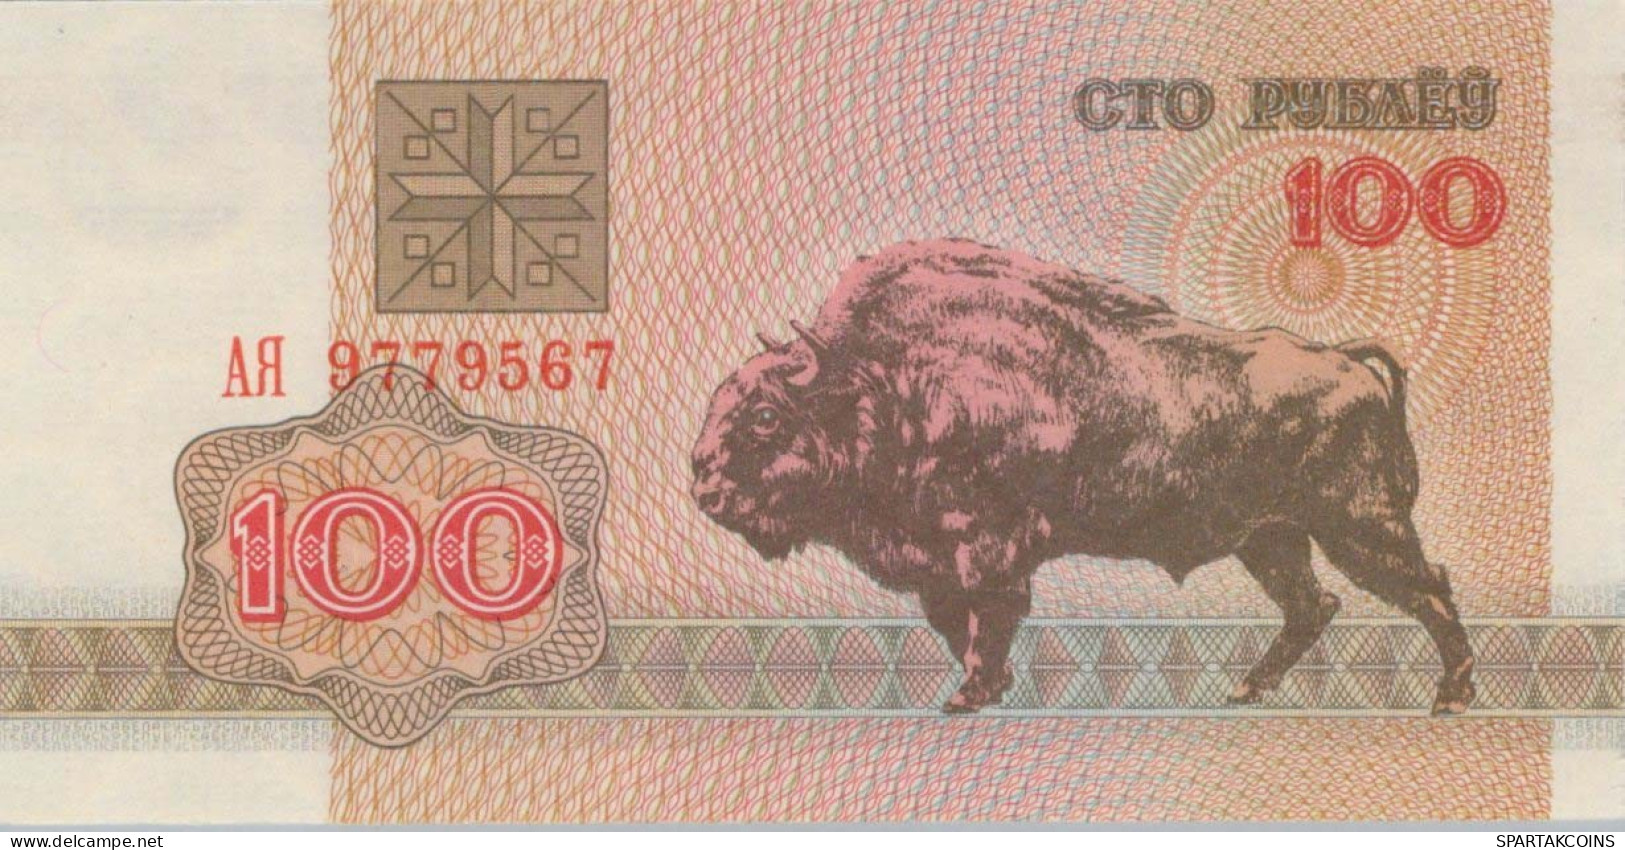 100 RUBLES 1992 BELARUS Papiergeld Banknote #PJ283 - [11] Local Banknote Issues